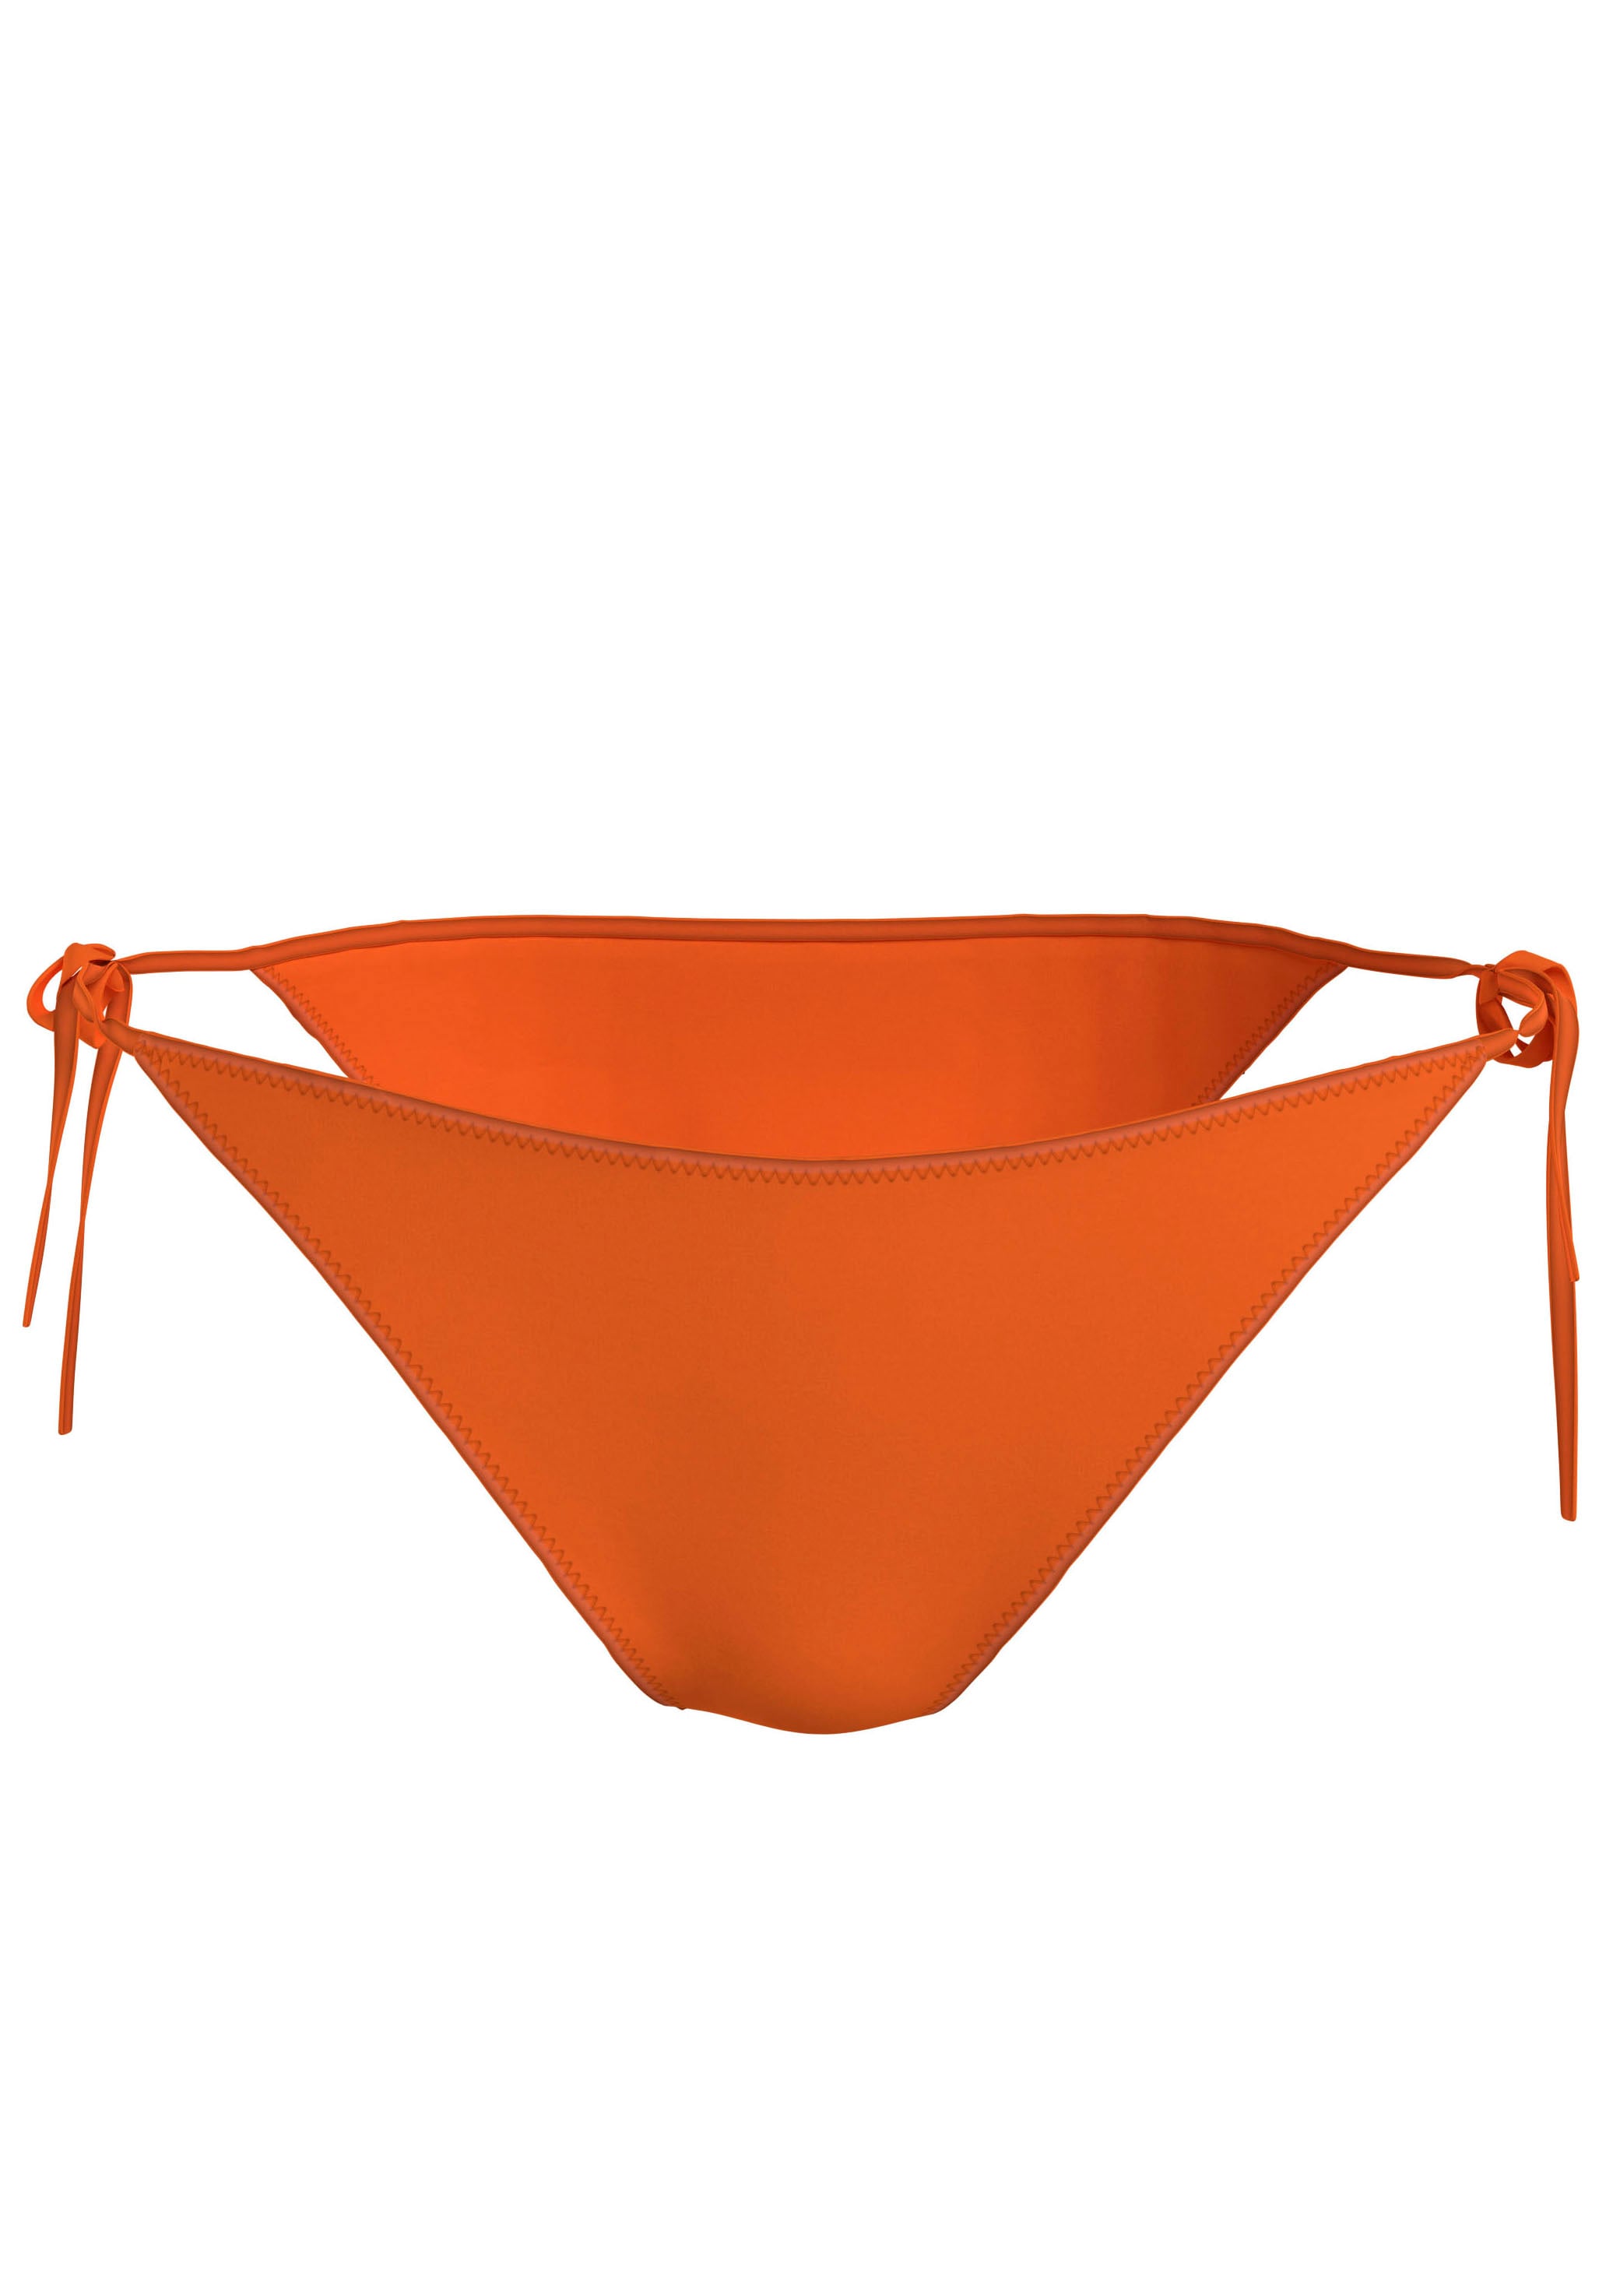 Bikini orange online ganz bei OTTO - einkaufen unkompliziert